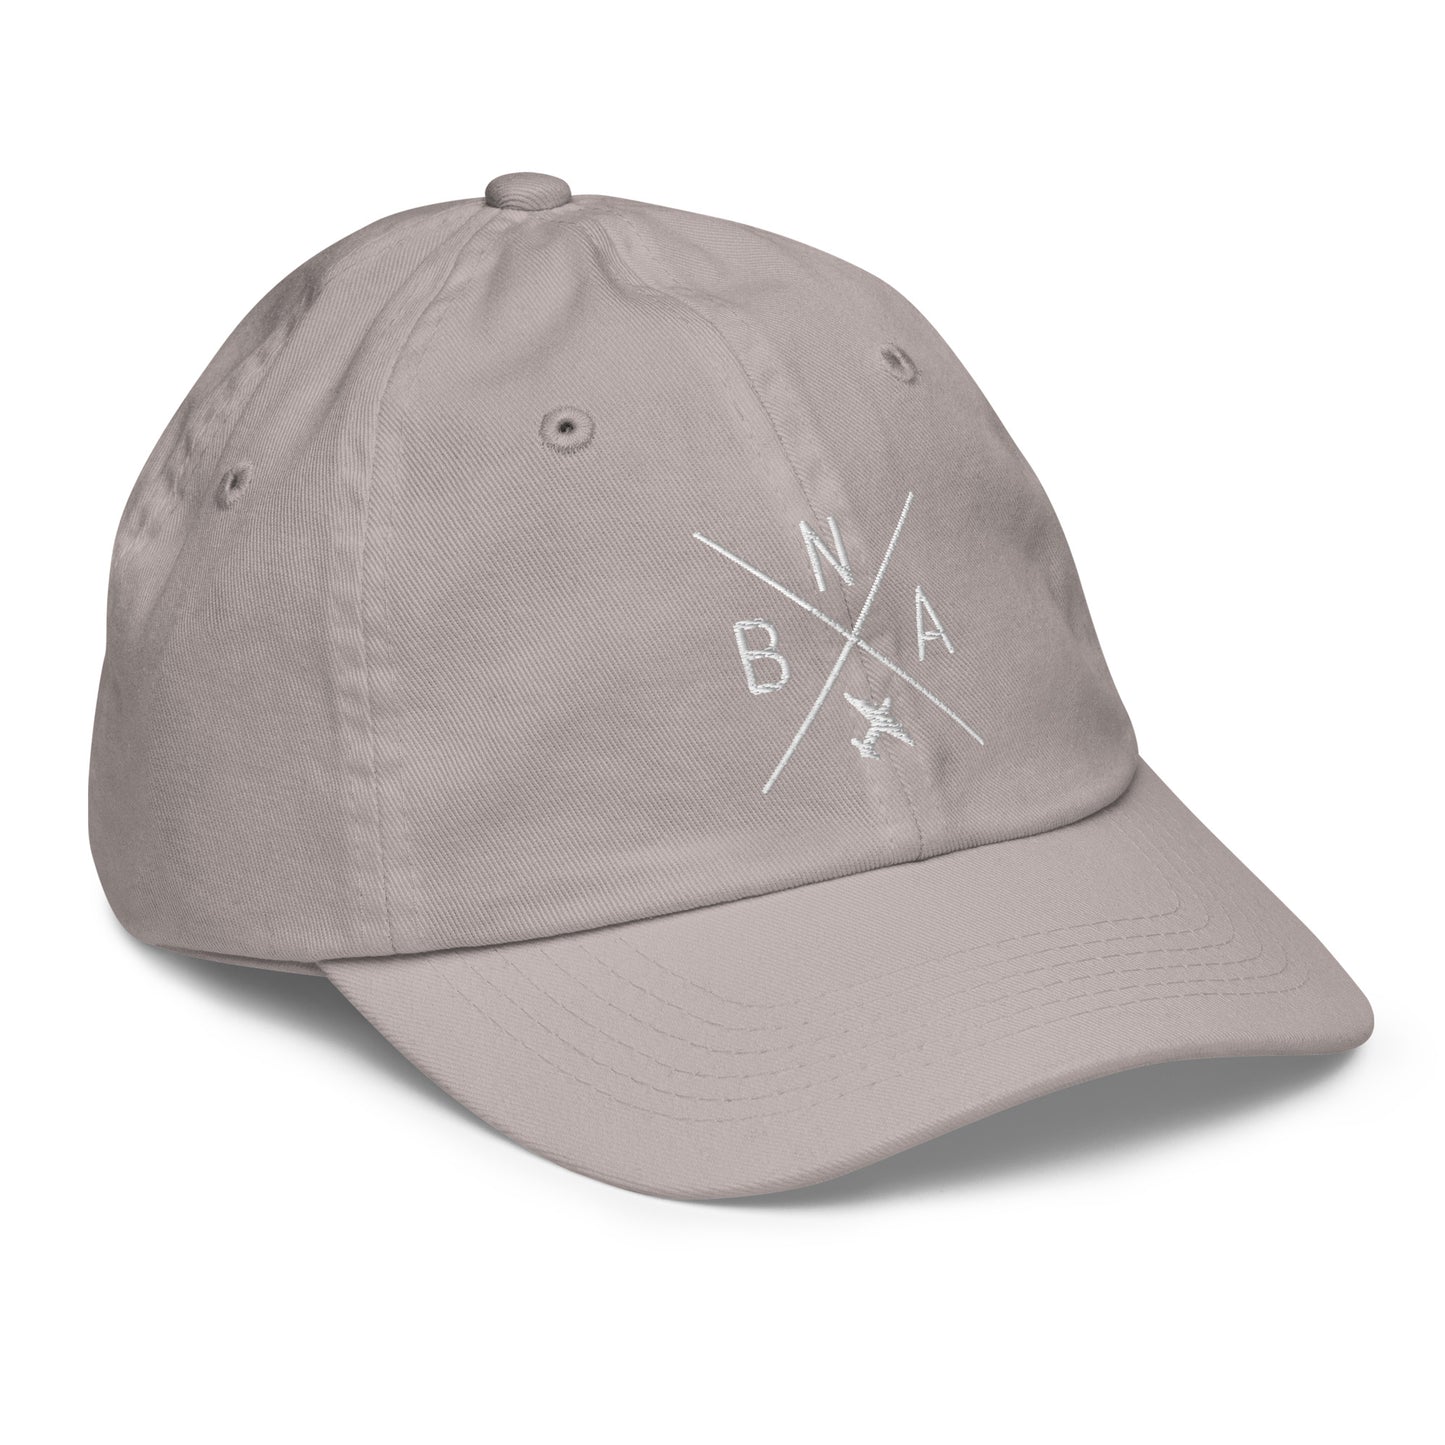 Crossed-X Kid's Baseball Cap - White • BNA Nashville • YHM Designs - Image 26